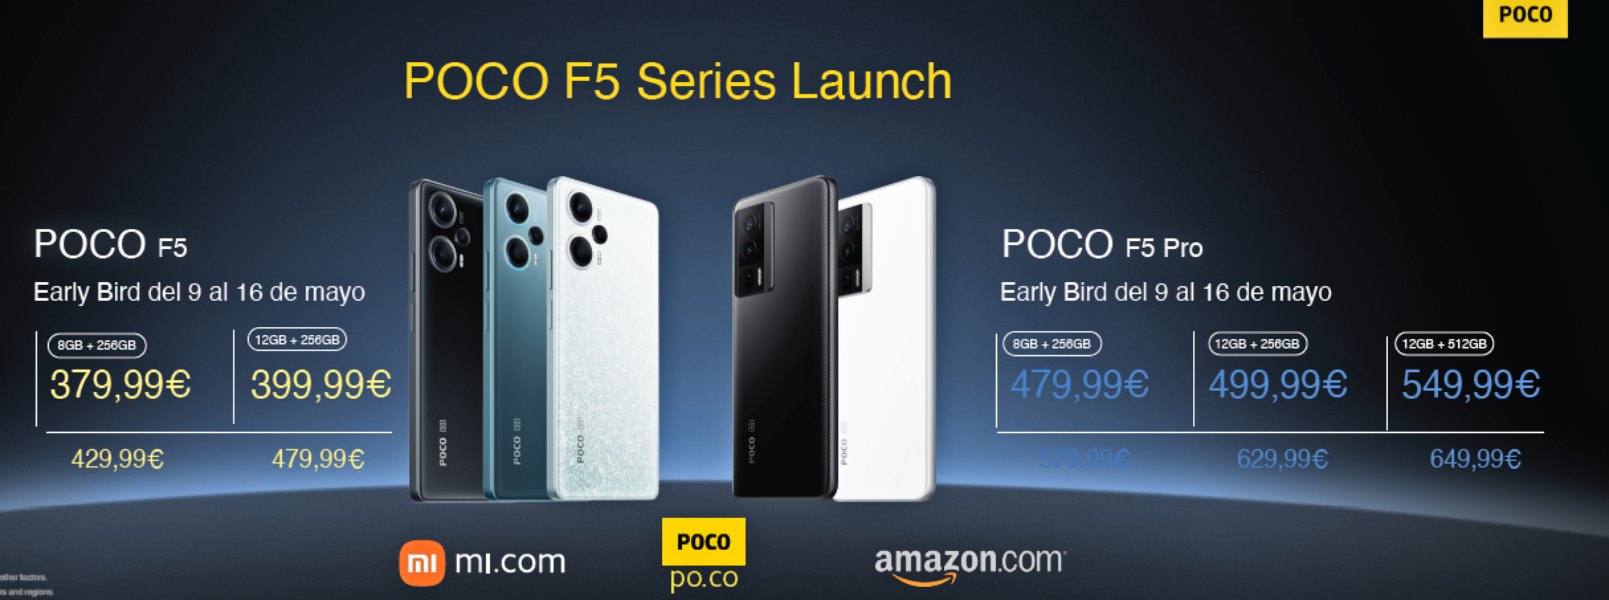 POCO F5 Series (F5 y F5 Pro) llegan con una gran oferta Early Bird